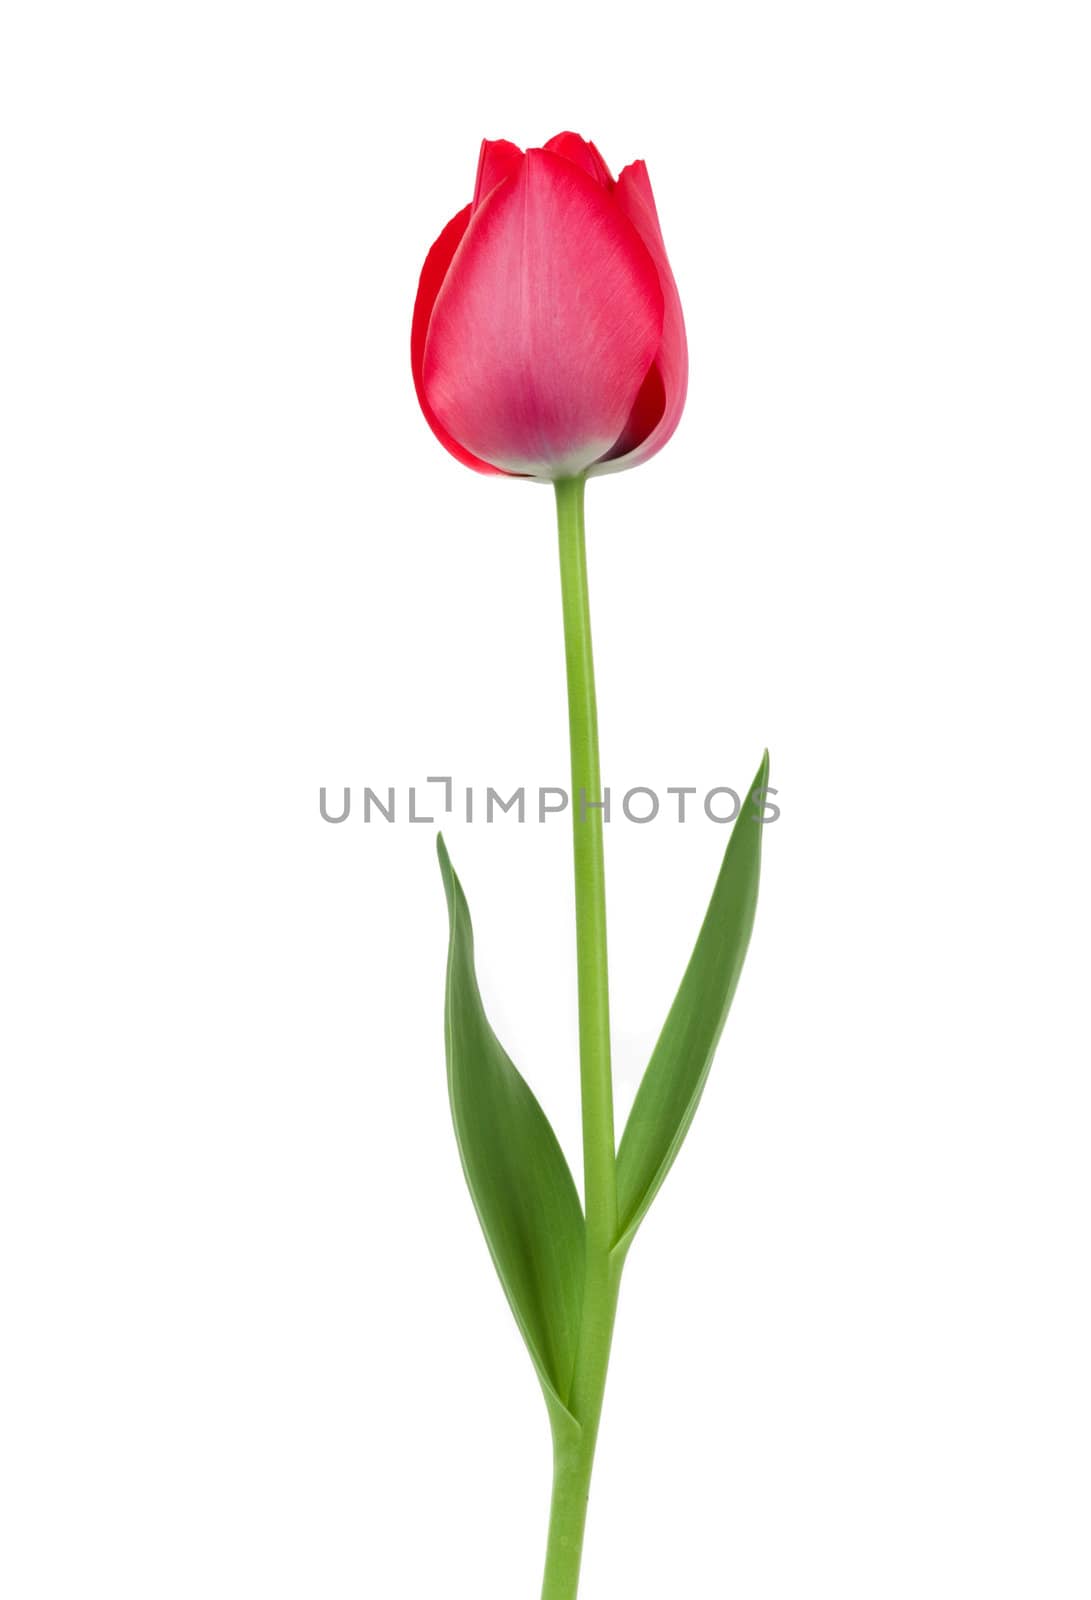 Elegant red tulip